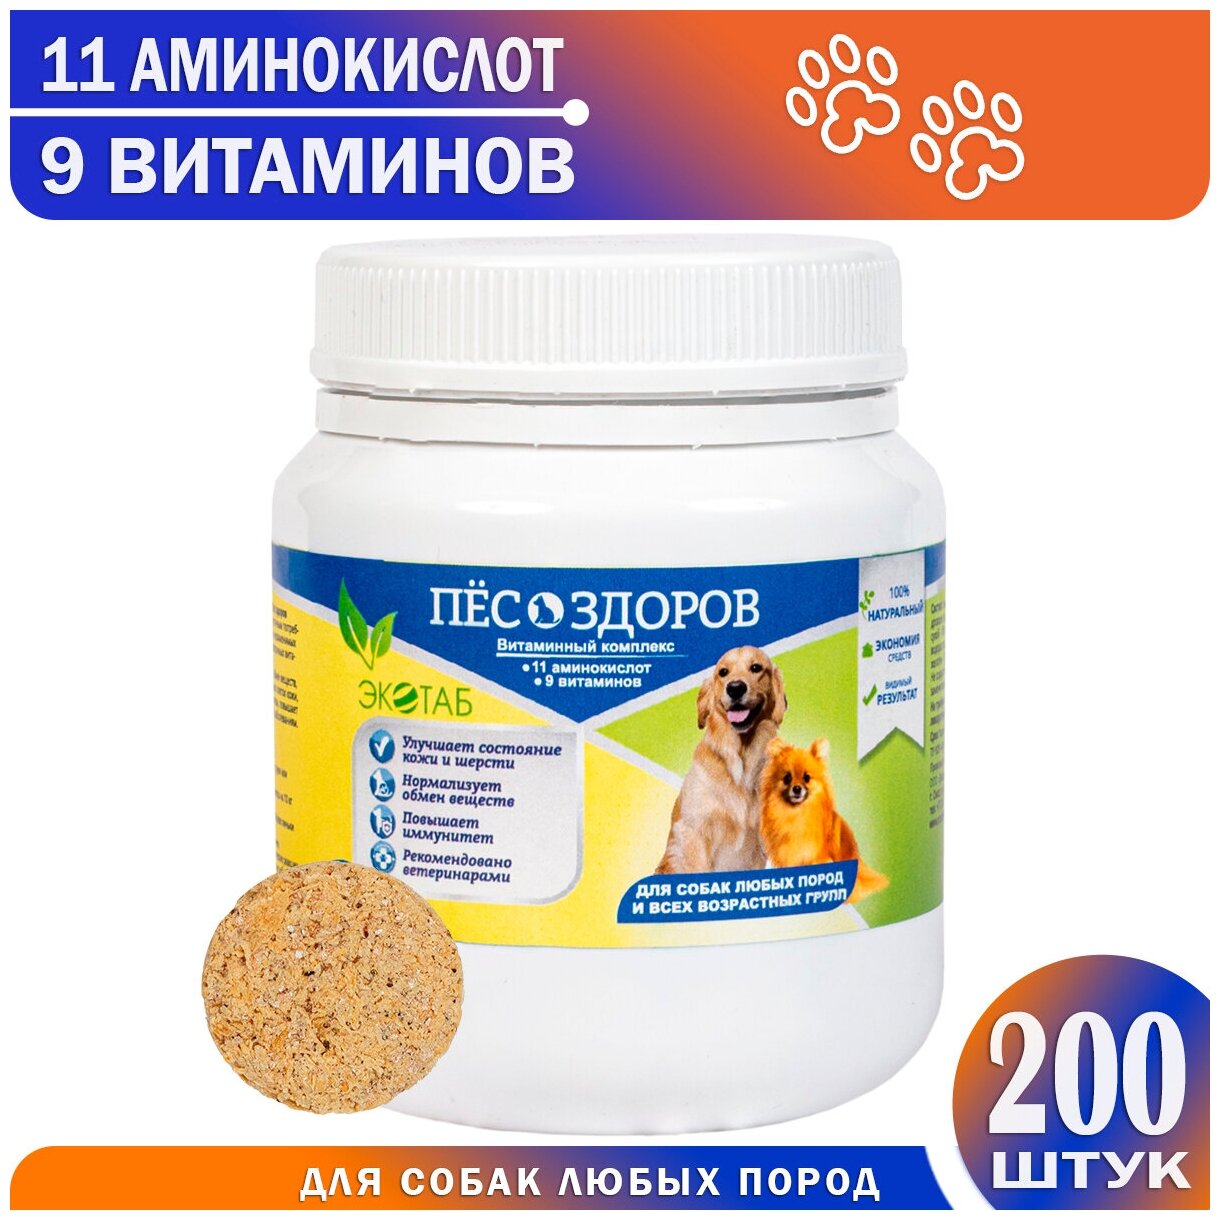 Витамины для собак и щенков крупных средних и мелких пород / Витаминное лакомство / Мультивитамины / Комплекс витаминов для беременных и кормящих